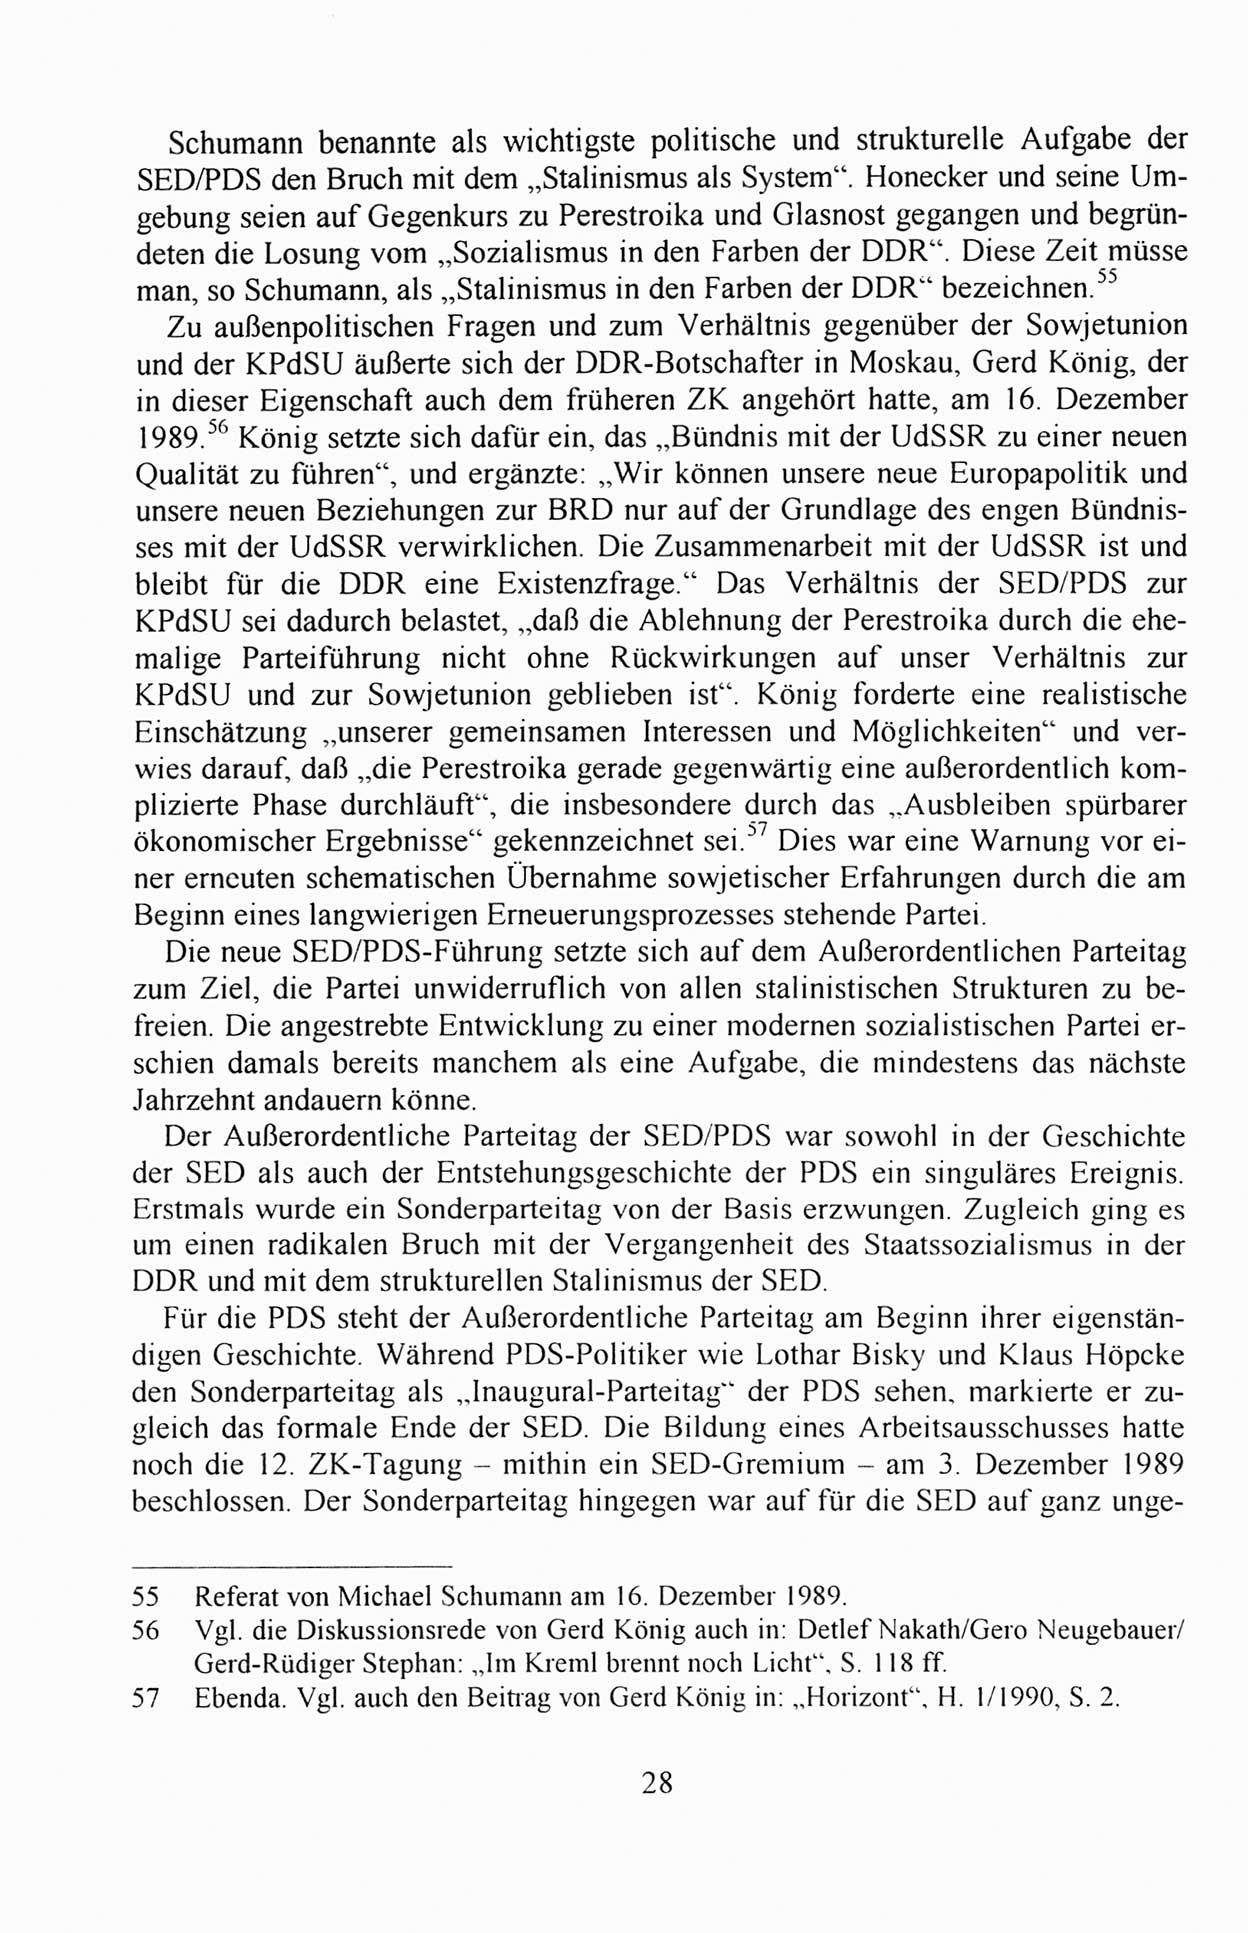 Außerordentlicher Parteitag der SED/PDS (Sozialistische Einheitspartei Deutschlands/Partei des Demokratischen Sozialismus) [Deutsche Demokratische Republik (DDR)], Protokoll der Beratungen am 8./9. und 16./17.12.1989 in Berlin 1989, Seite 28 (PT. SED/PDS DDR Prot. 1989, S. 28)